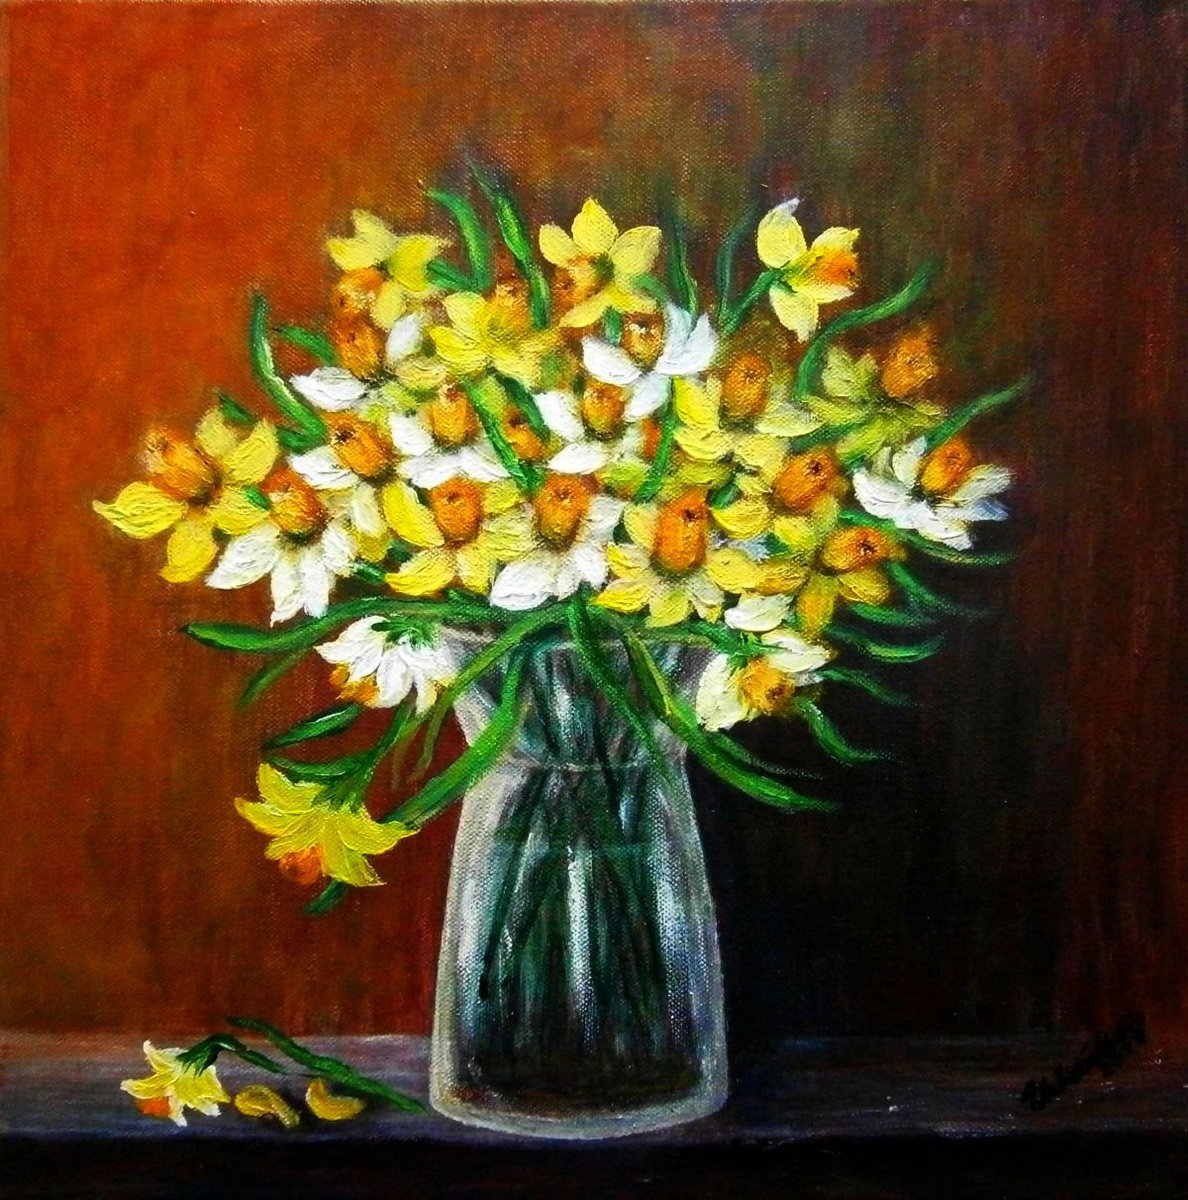 Still life - daffodils .. by Em�lia Urban�kov�